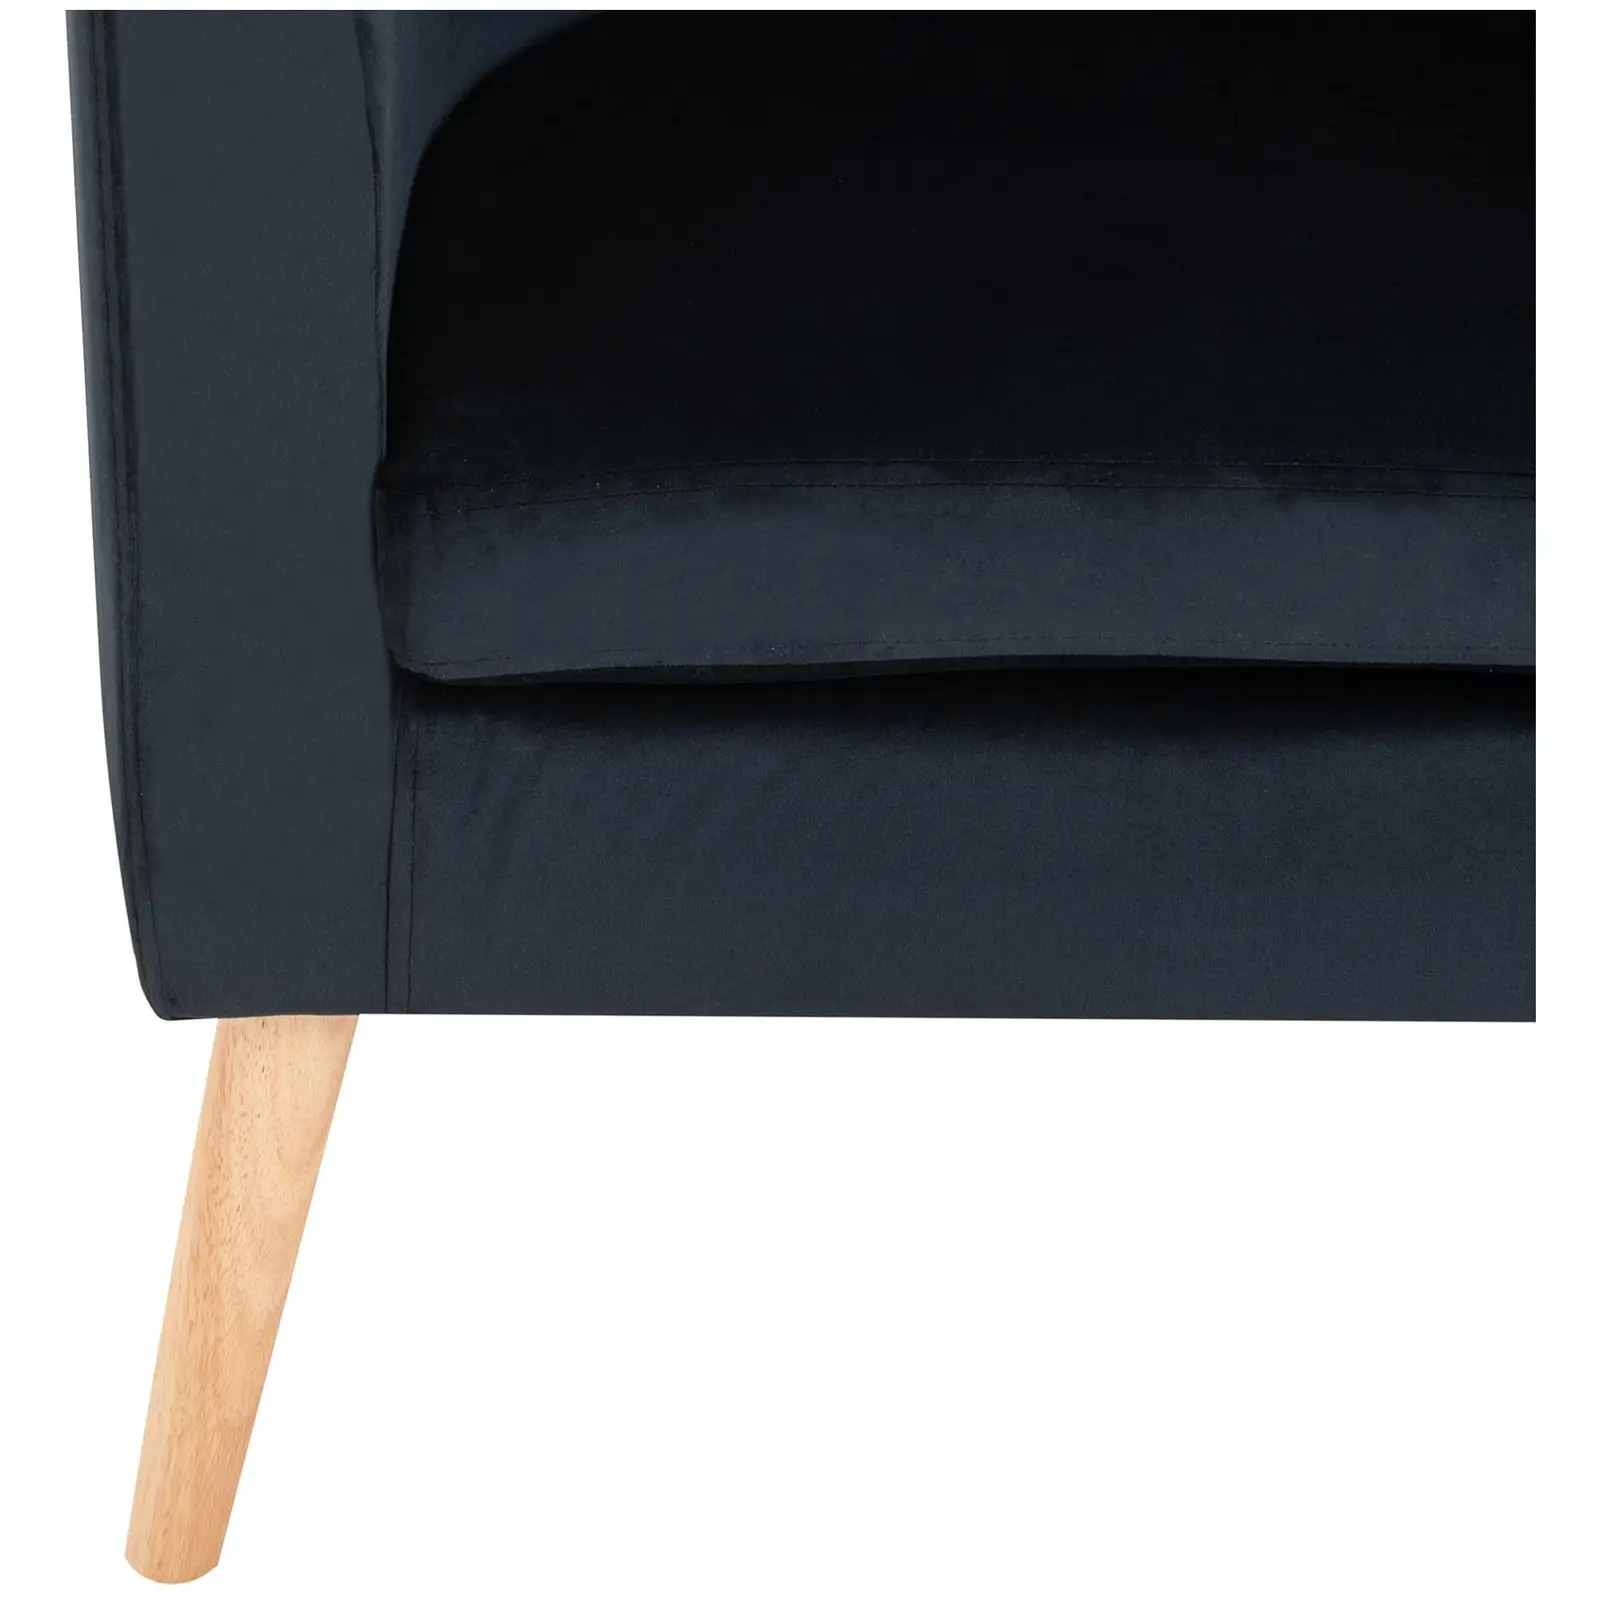 B-zboží Čalouněná židle - do 180 kg - sedací plocha 49 x 53 cm - černá